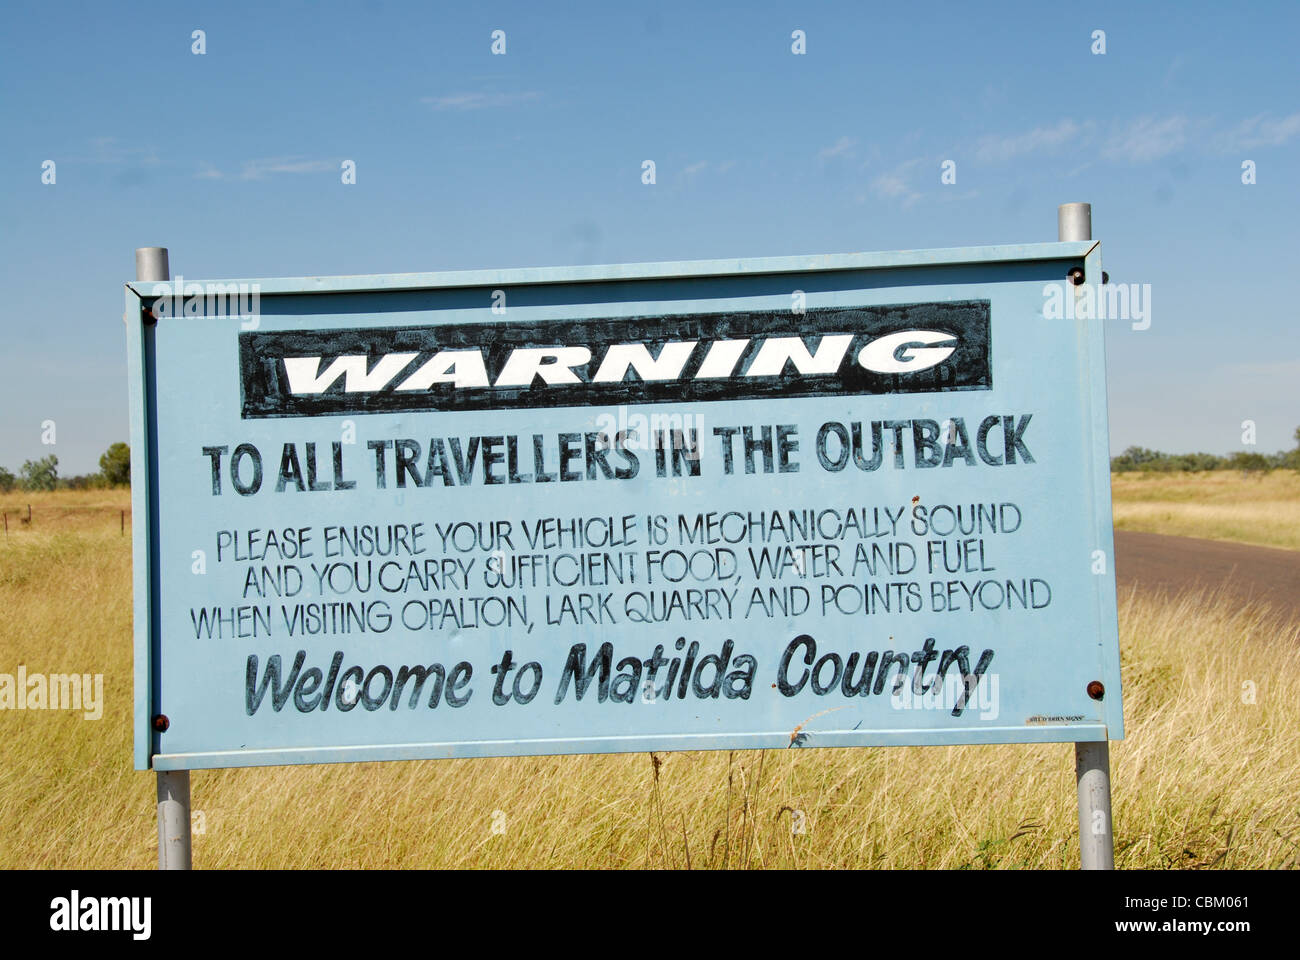 Signe de route au début de la route en Winton-Jundah met en garde les voyageurs de Winton le risque dans l'Outback de l'Australie Banque D'Images